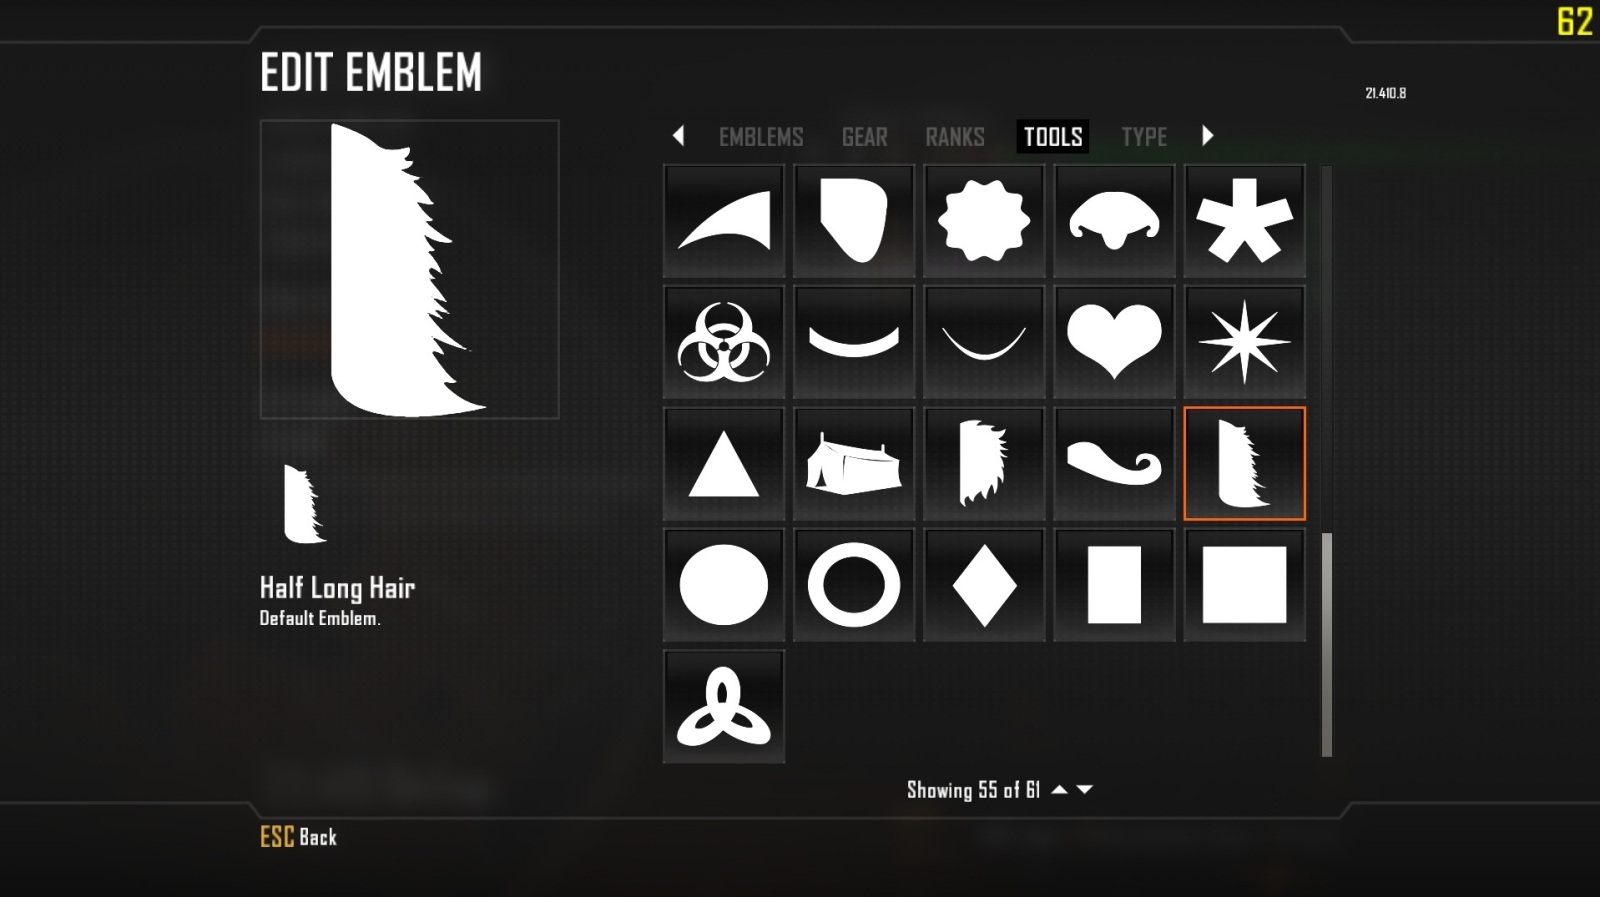 Black Ops 2 Emblem Maker